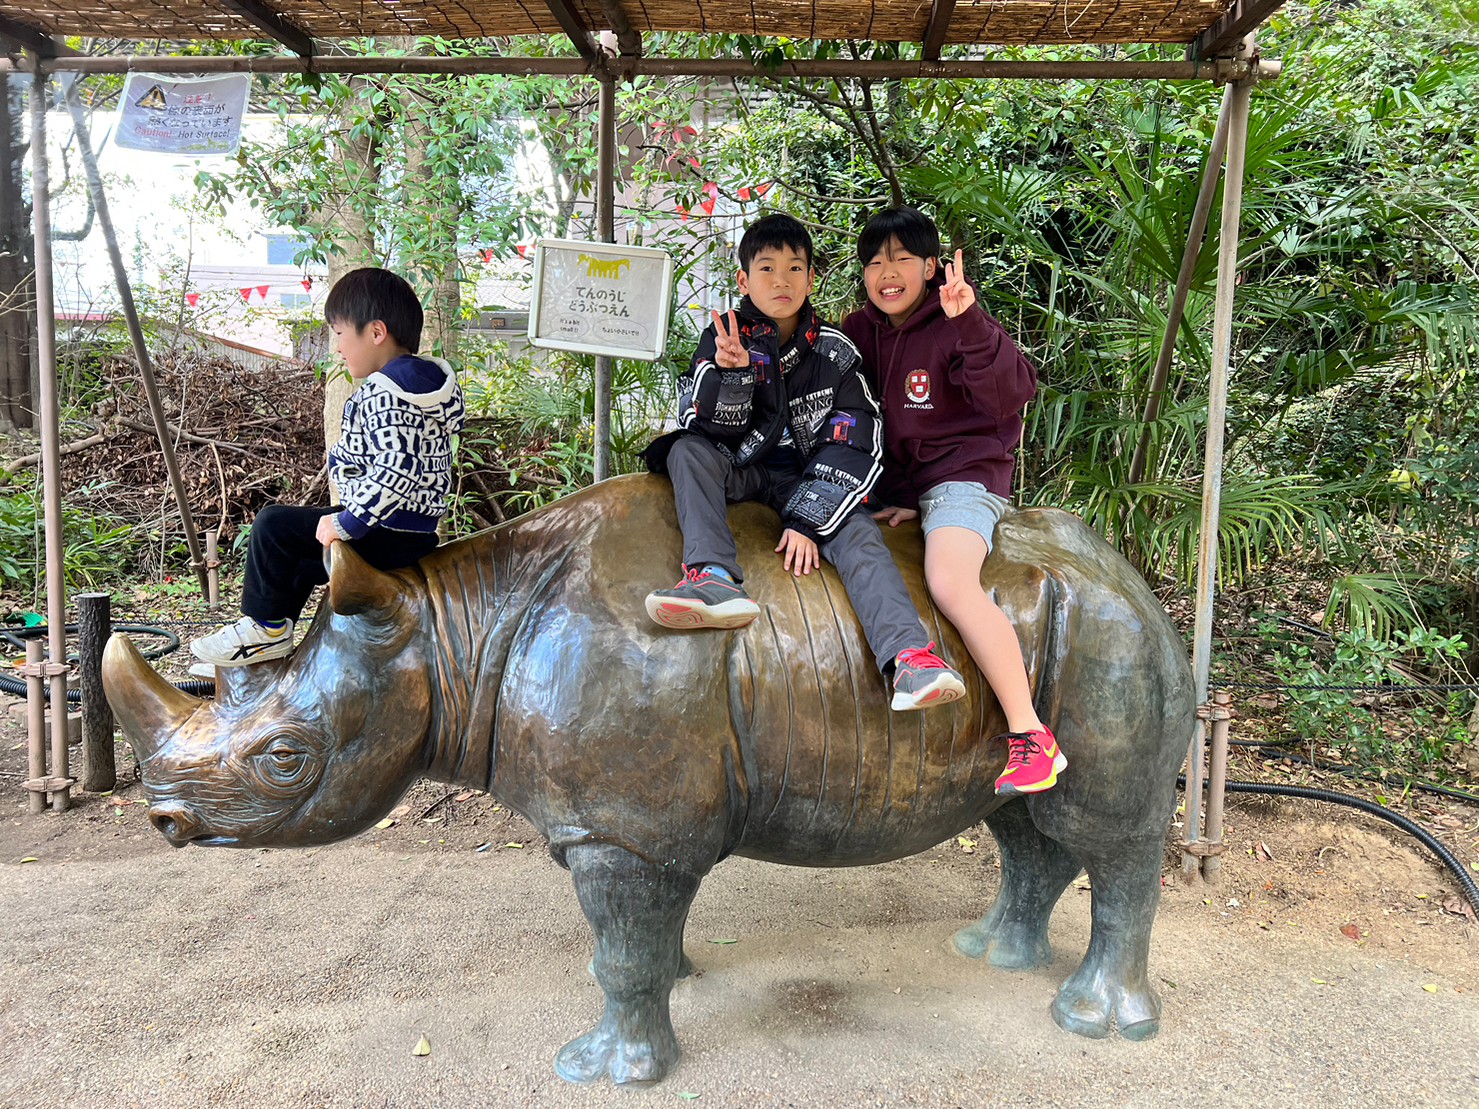 天王寺動物園の撮影スポットで記念写真を撮る小学生